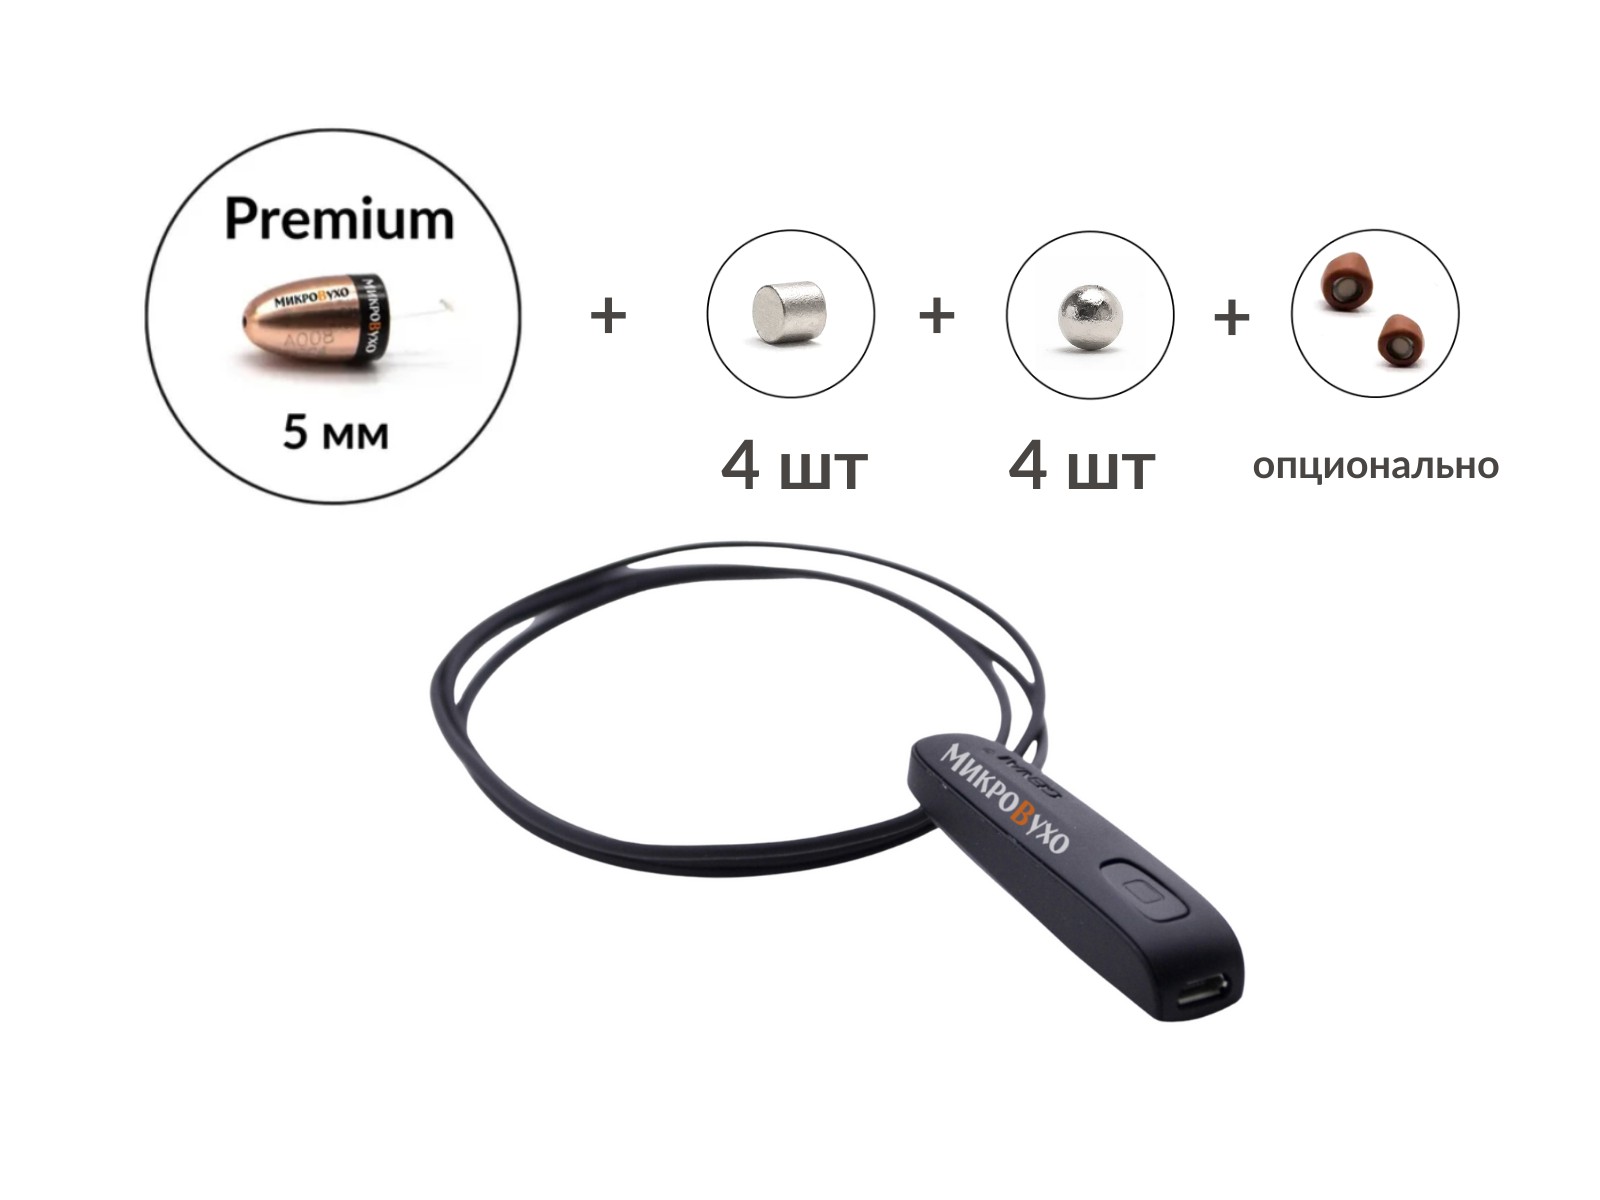 Универсальная гарнитура Bluetooth Basic с капсулой Premium и магнитами 2 мм - изображение 15